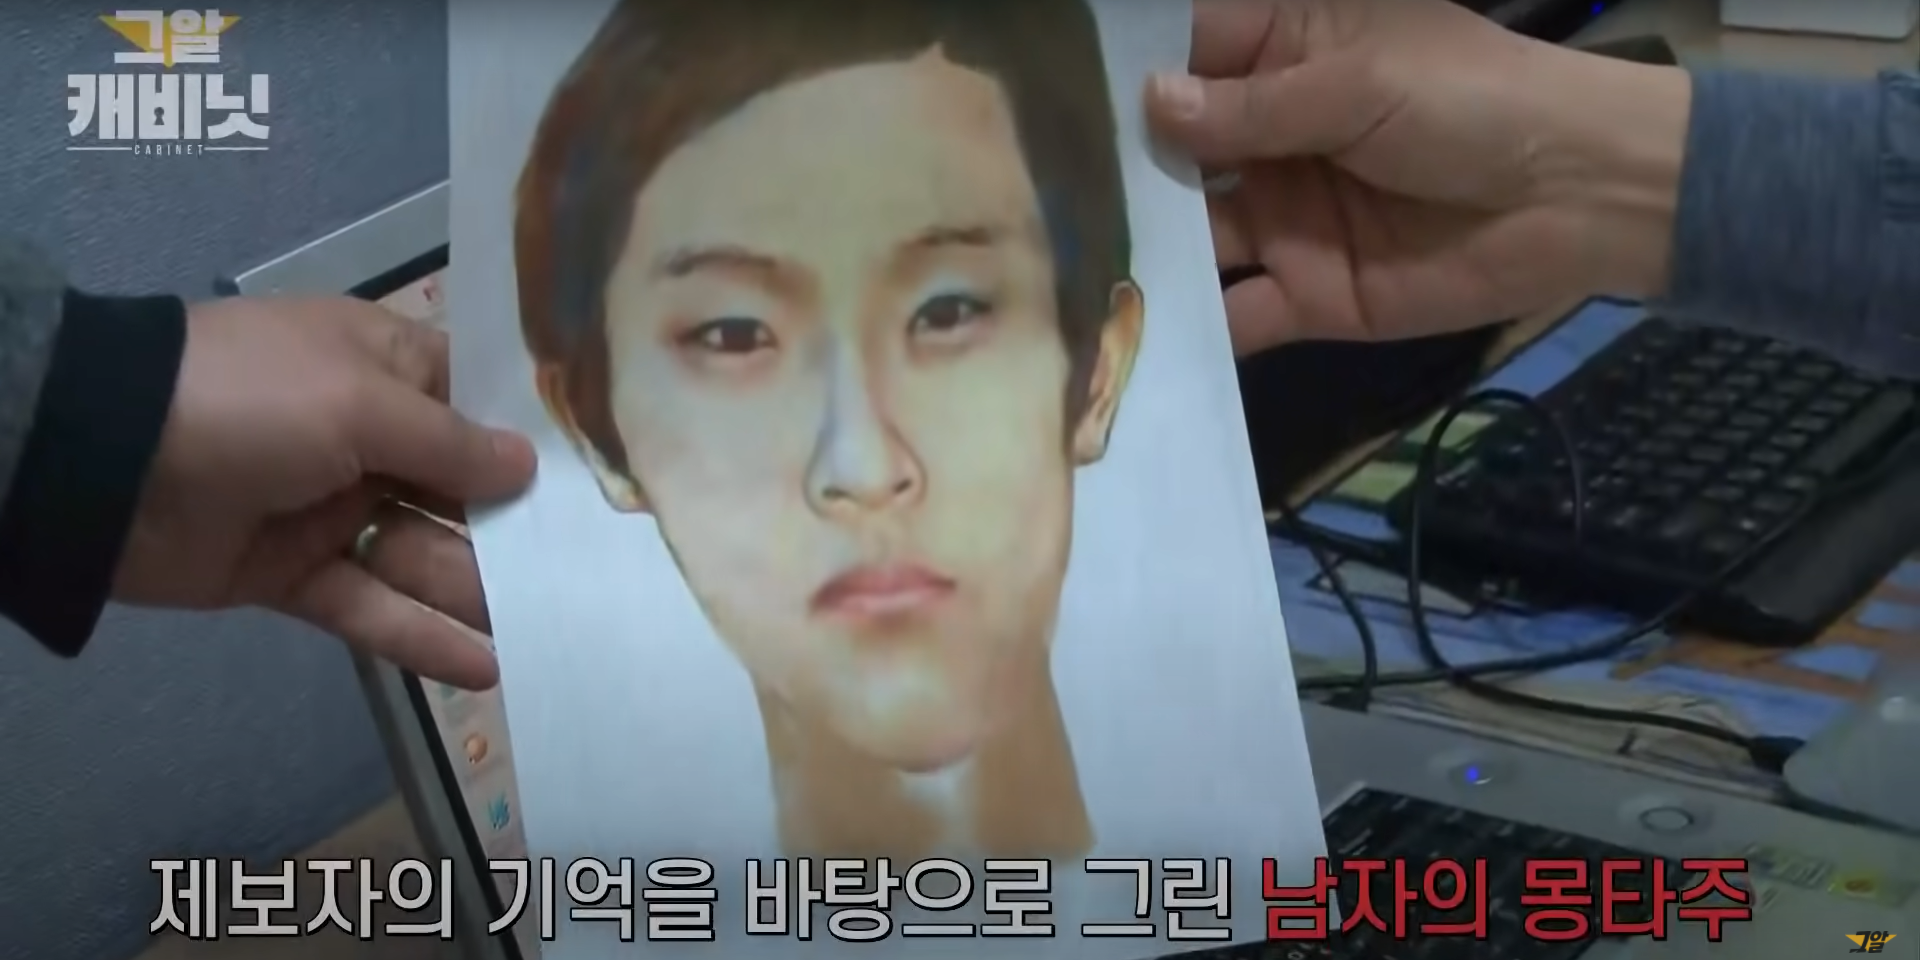 unsolved crimes in korea - murderer sketch